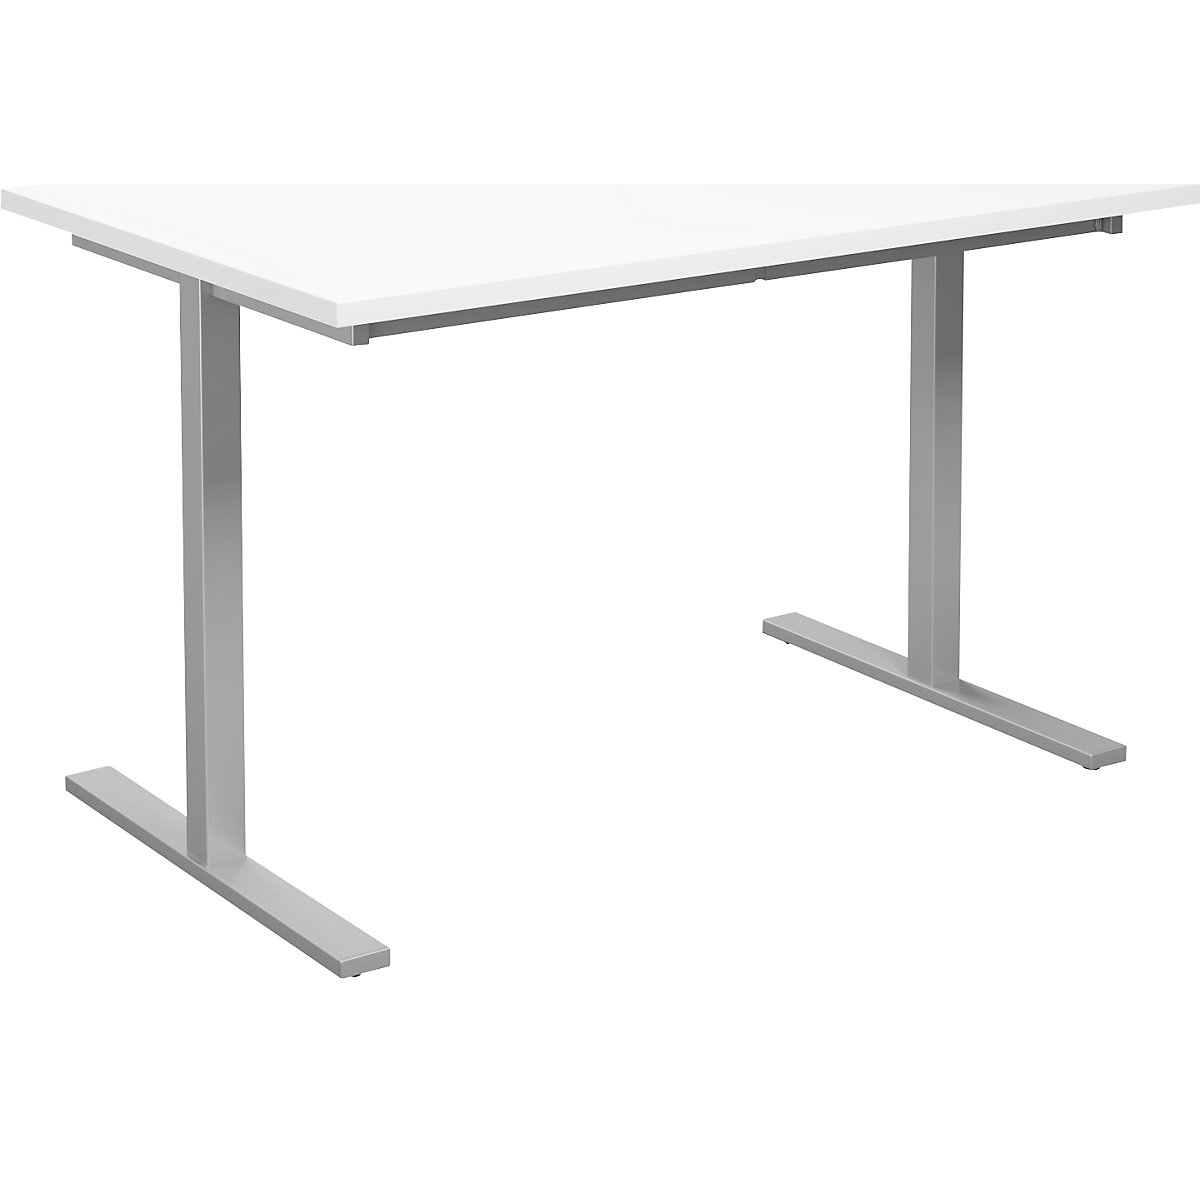 DUO-T multi-purpose desk, straight tabletop, WxD 1200 x 800 mm, white, silver-15